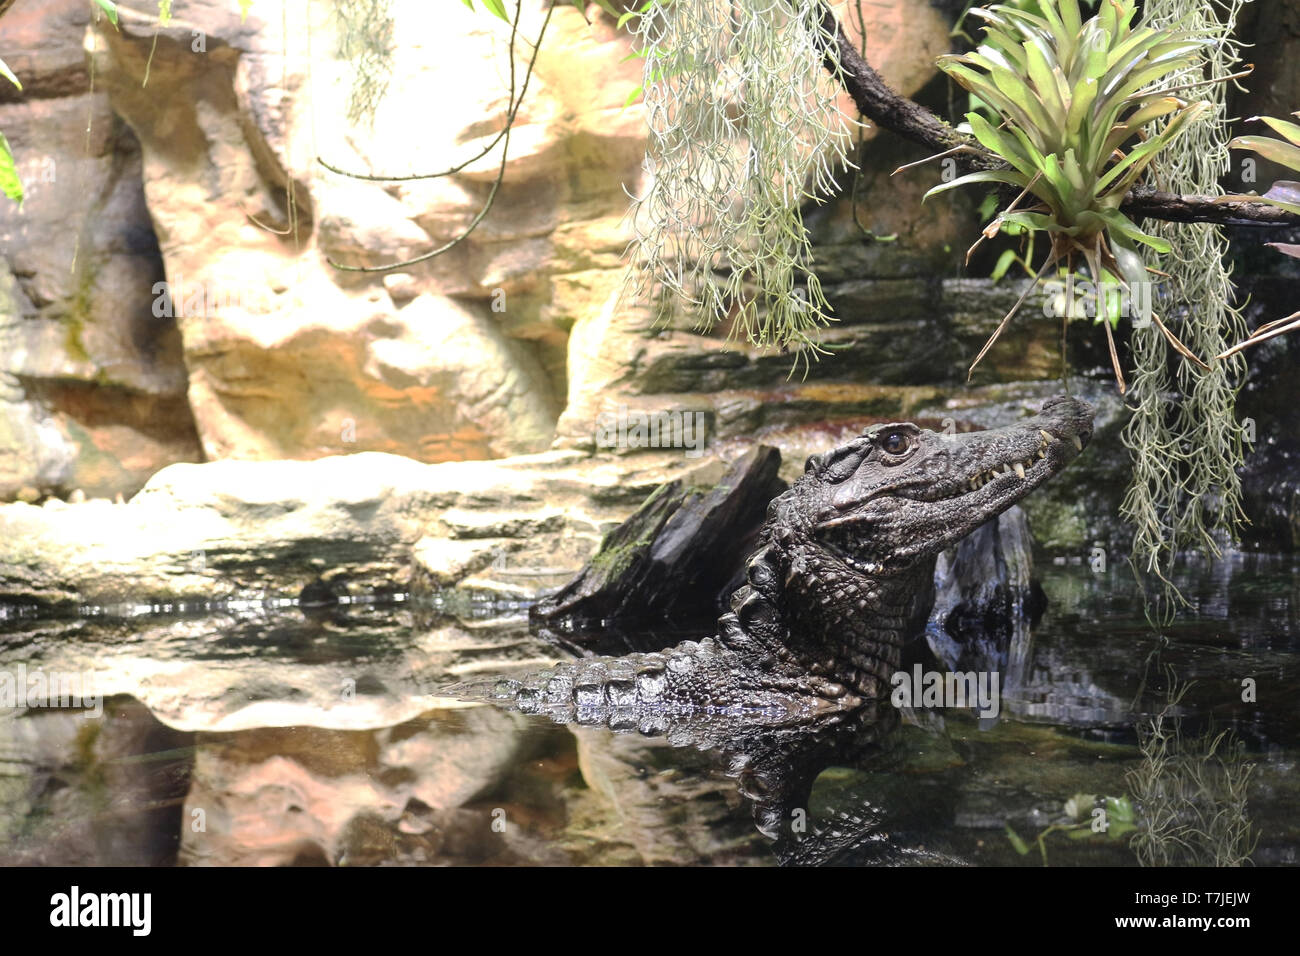 Alligator-Açu lurks, disguised between vegetation and rocks. Stock Photo